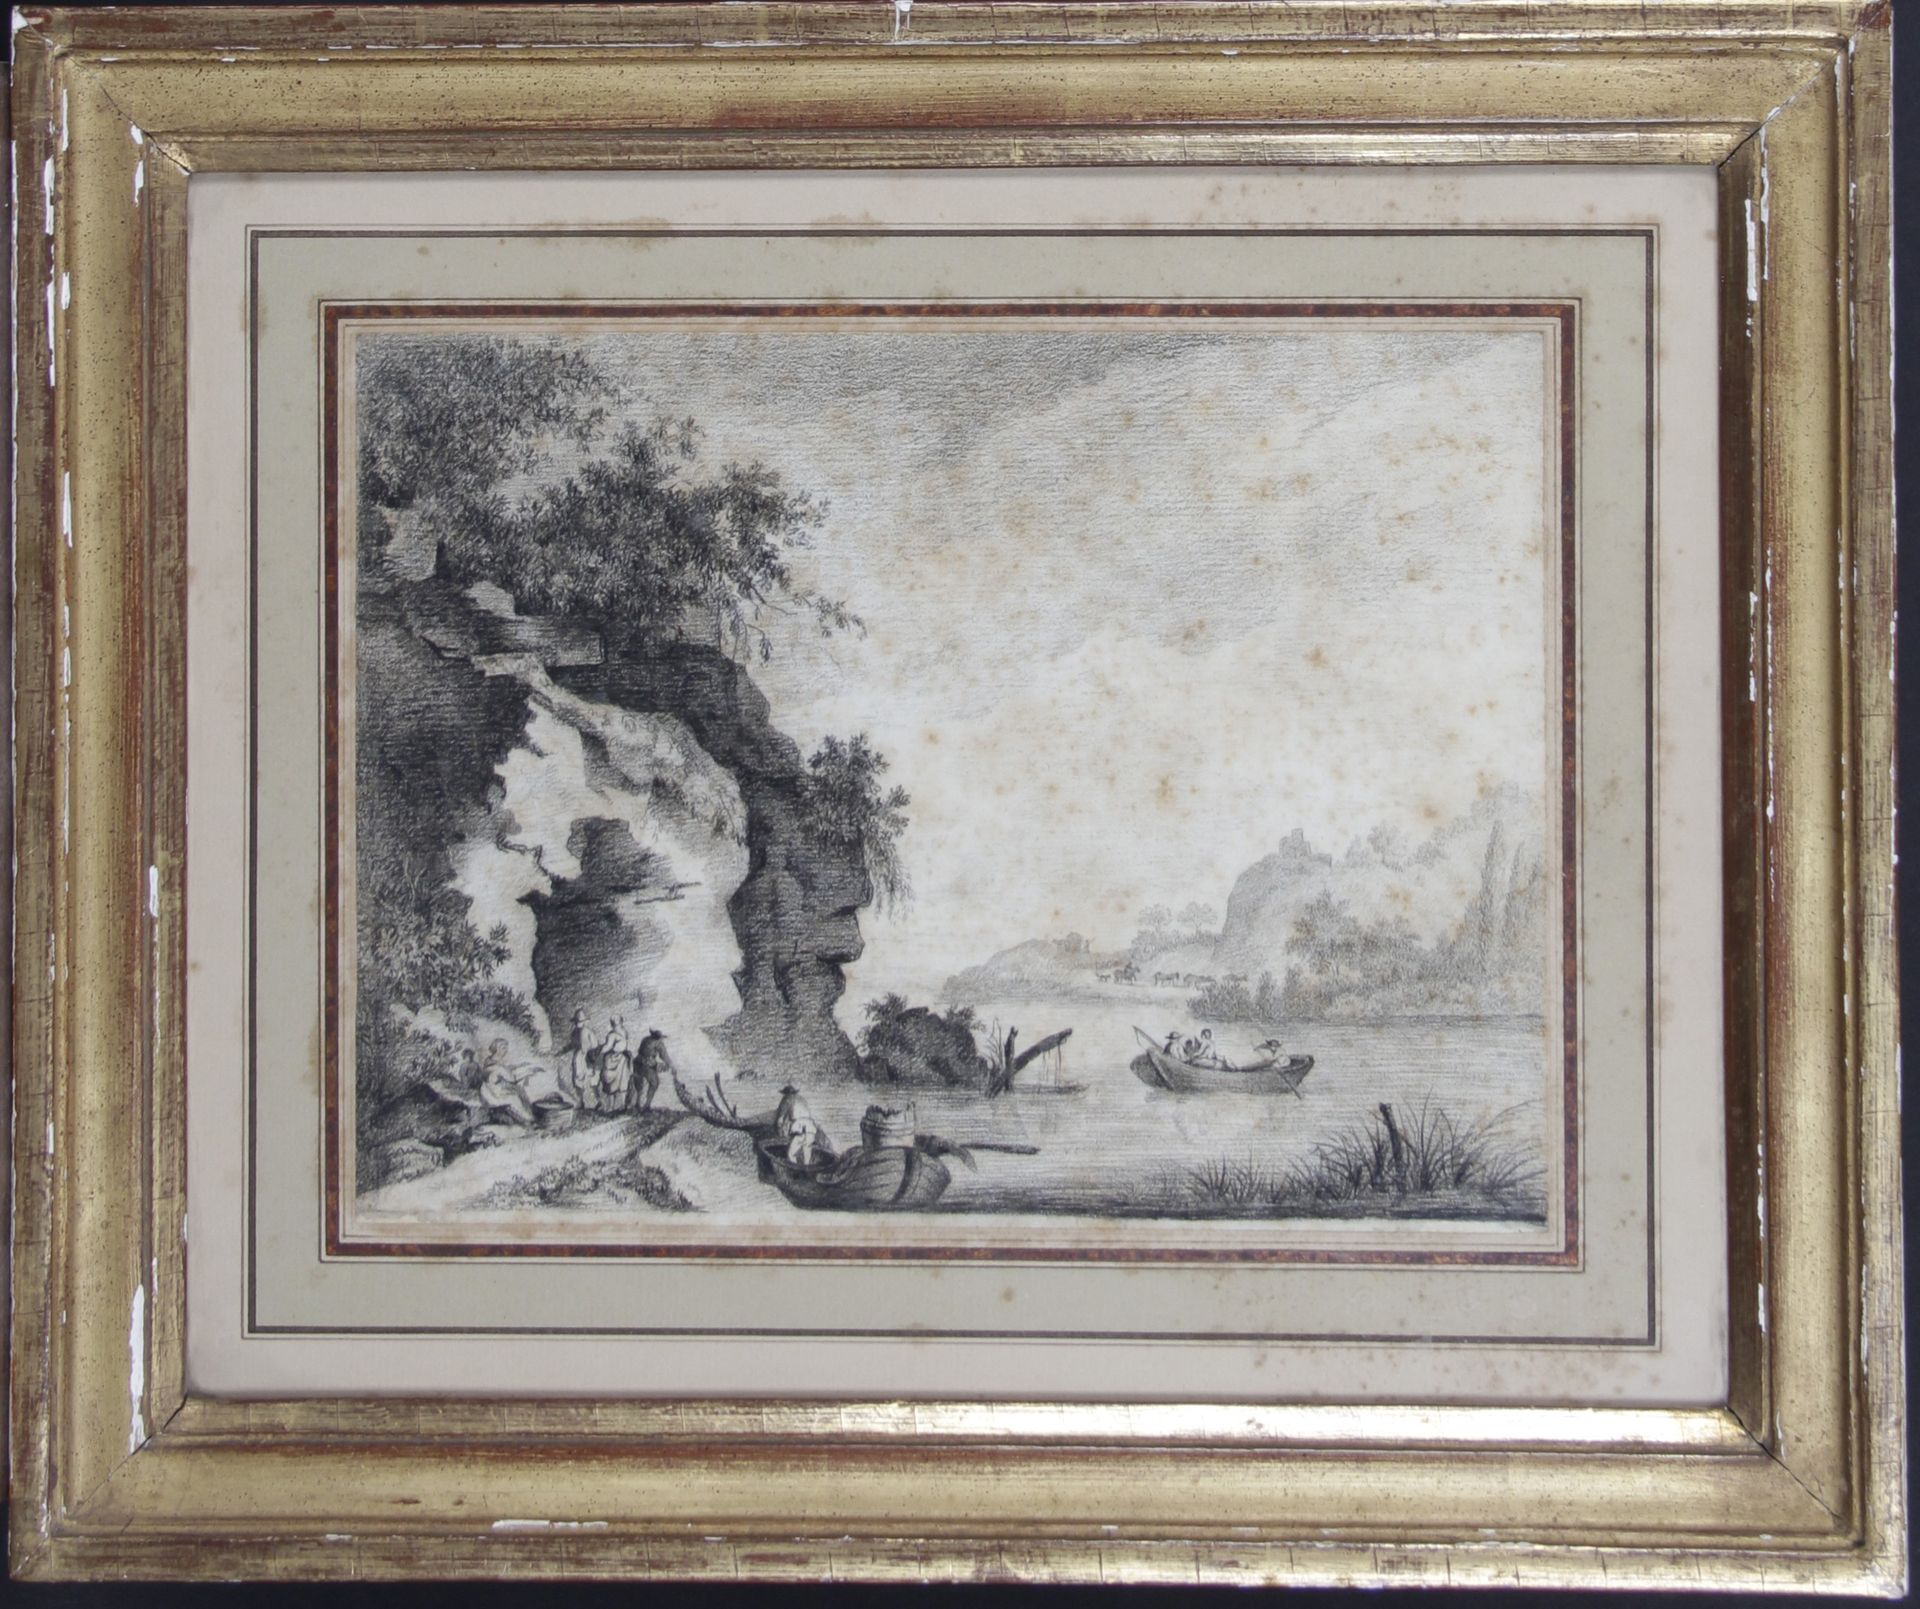 Null nella moda del 18° secolo

"Paesaggio fluviale animato

Disegno a carboncin&hellip;